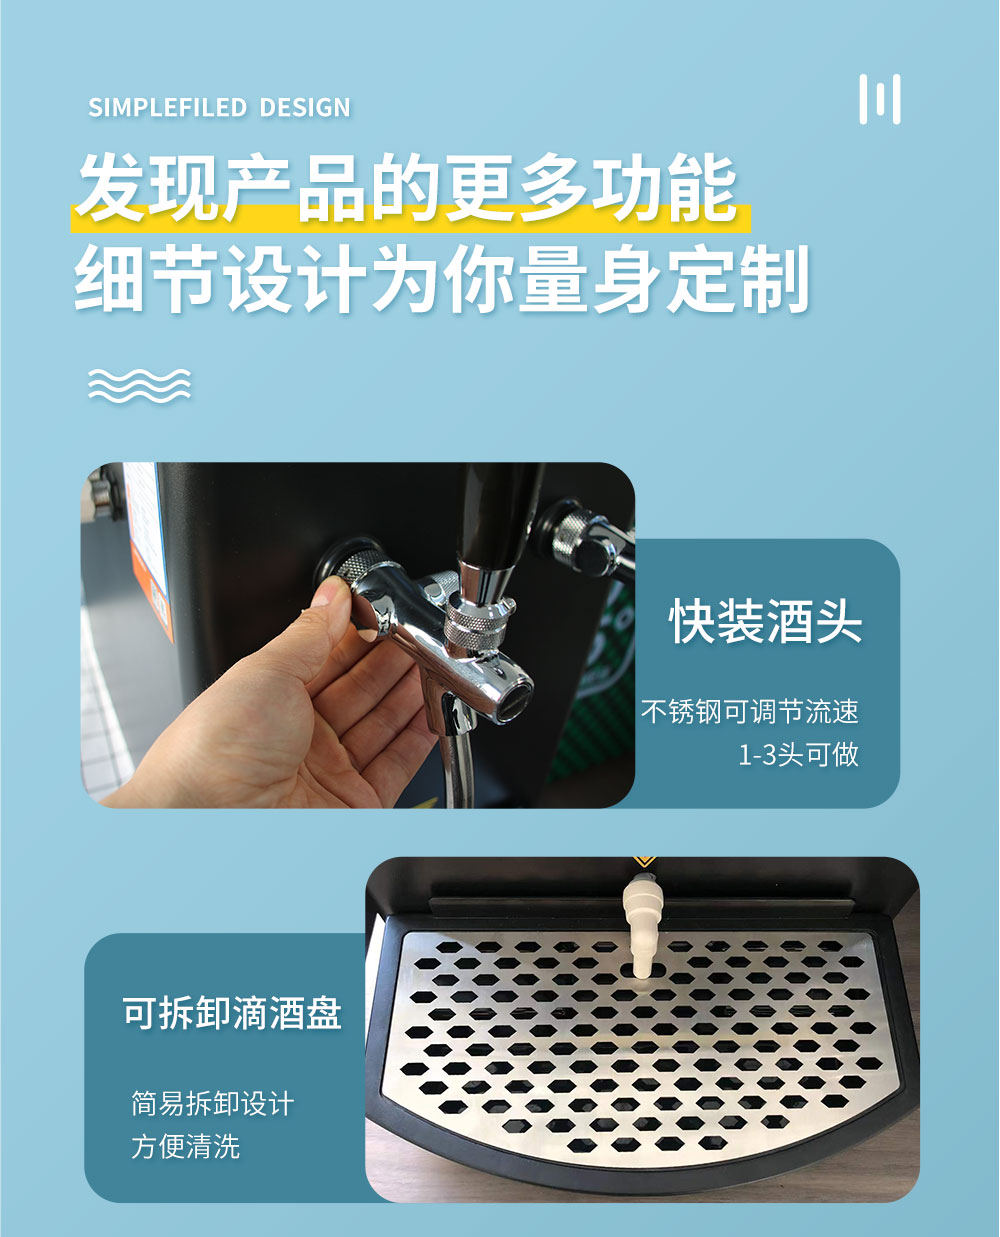 乐源桌面型台式水冷扎啤机(图5)